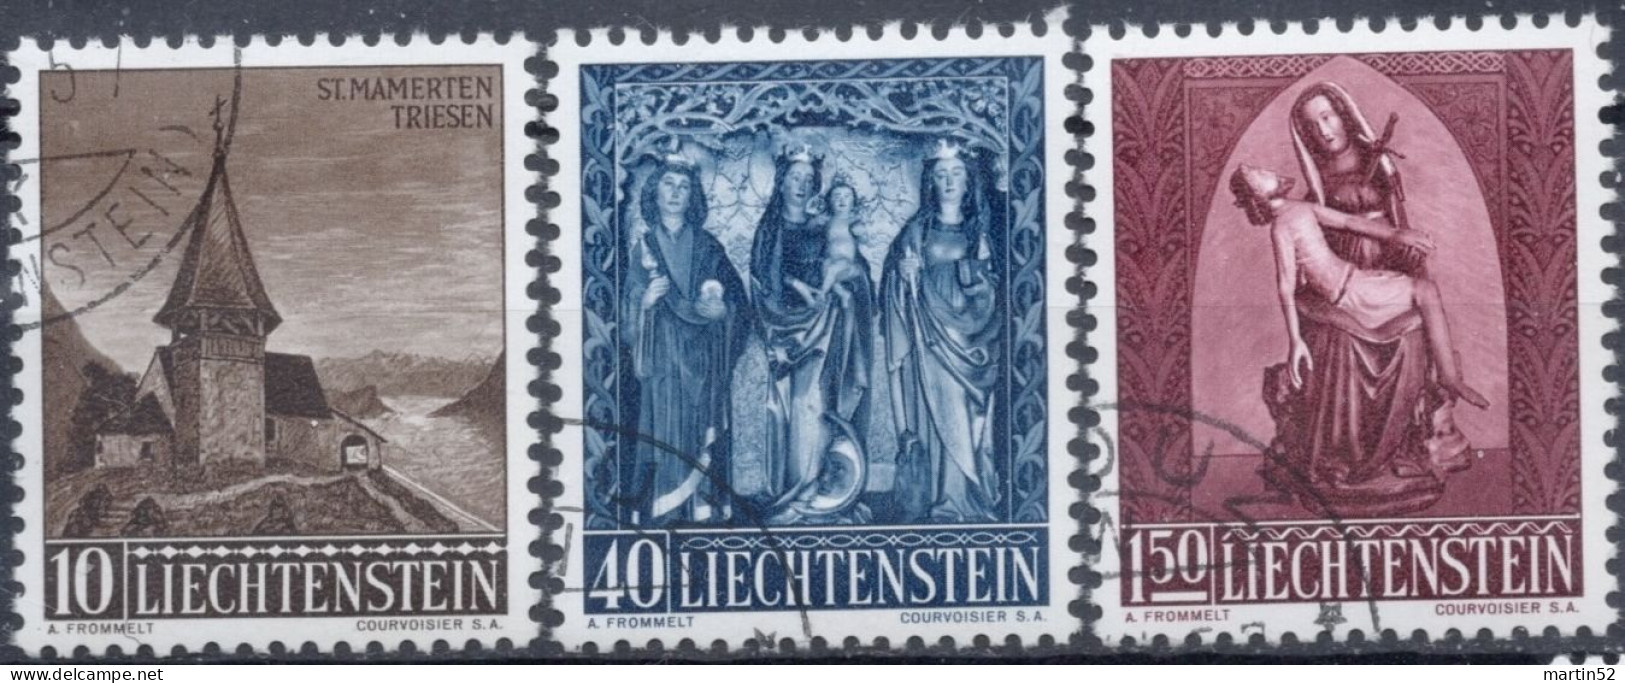 Liechtenstein 1957: Weihnachten Zu 306-308 Mi 362-364 Yv 324-326 Gestempelt Obliterée Used (Zumstein CHF 25.00) - Gebraucht